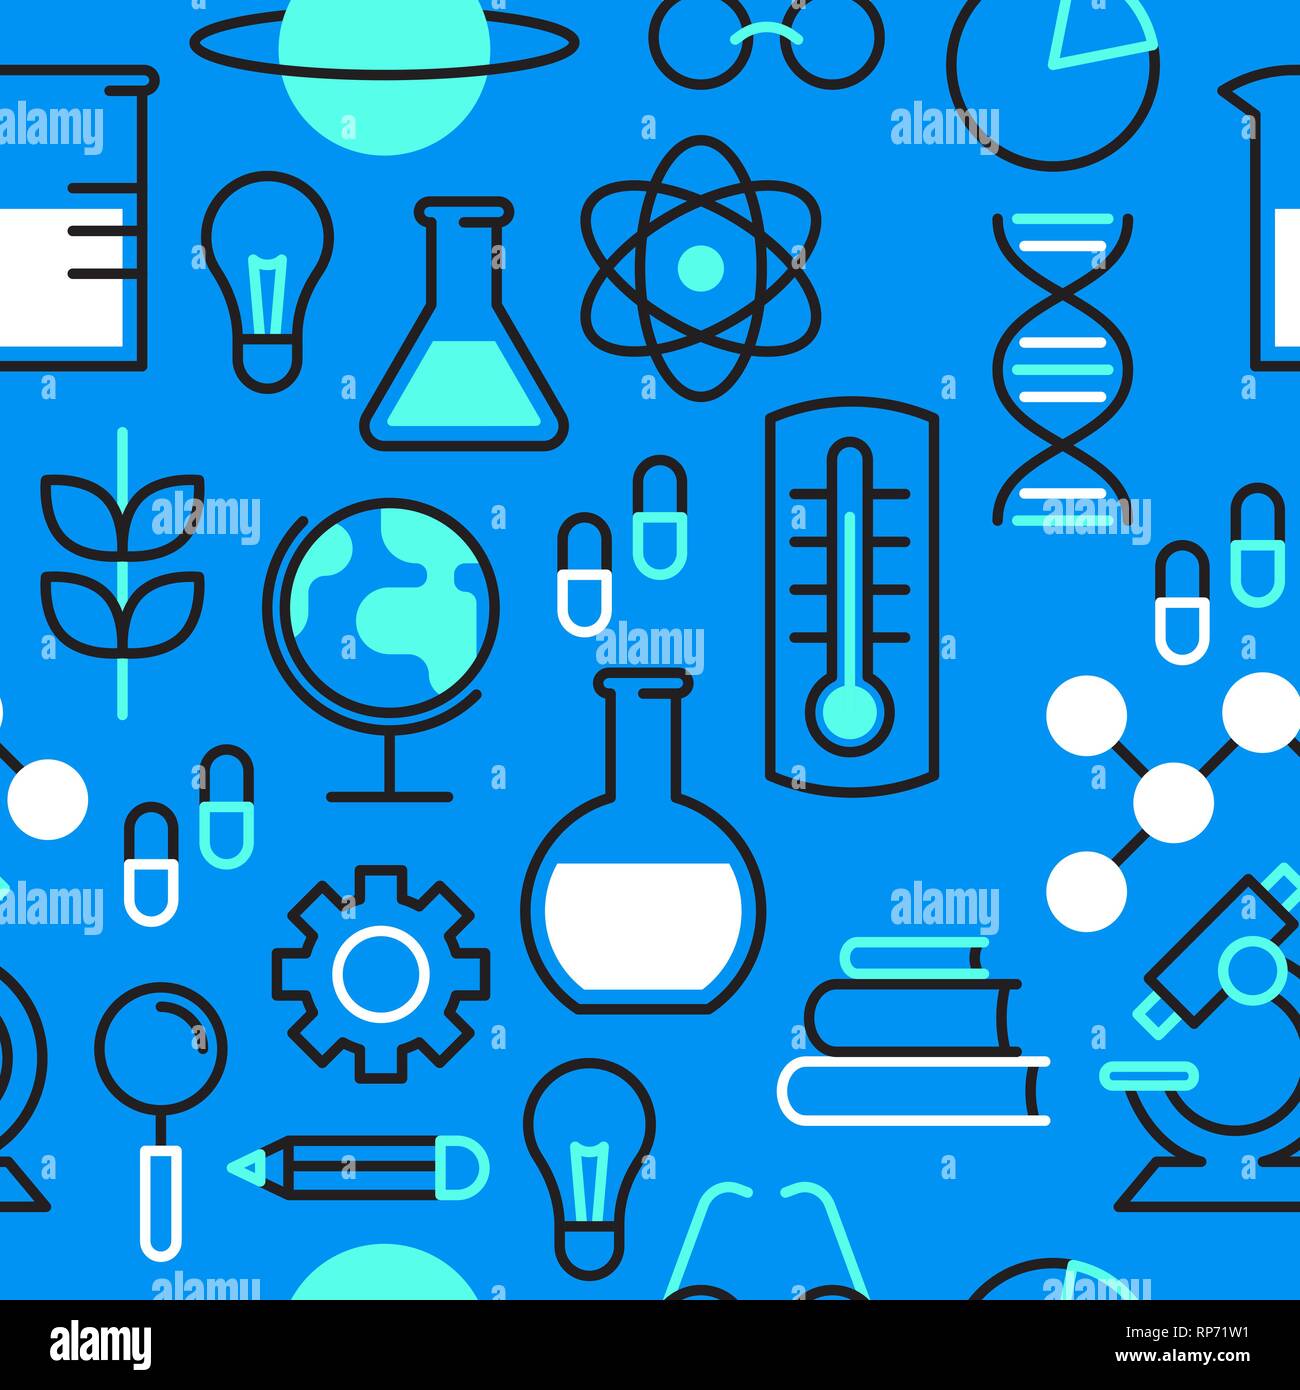 Motif de fond transparente la science avec icônes de couleur bleue pour la recherche scientifique concept. Microscope comprend, chimie ballon et educati Illustration de Vecteur